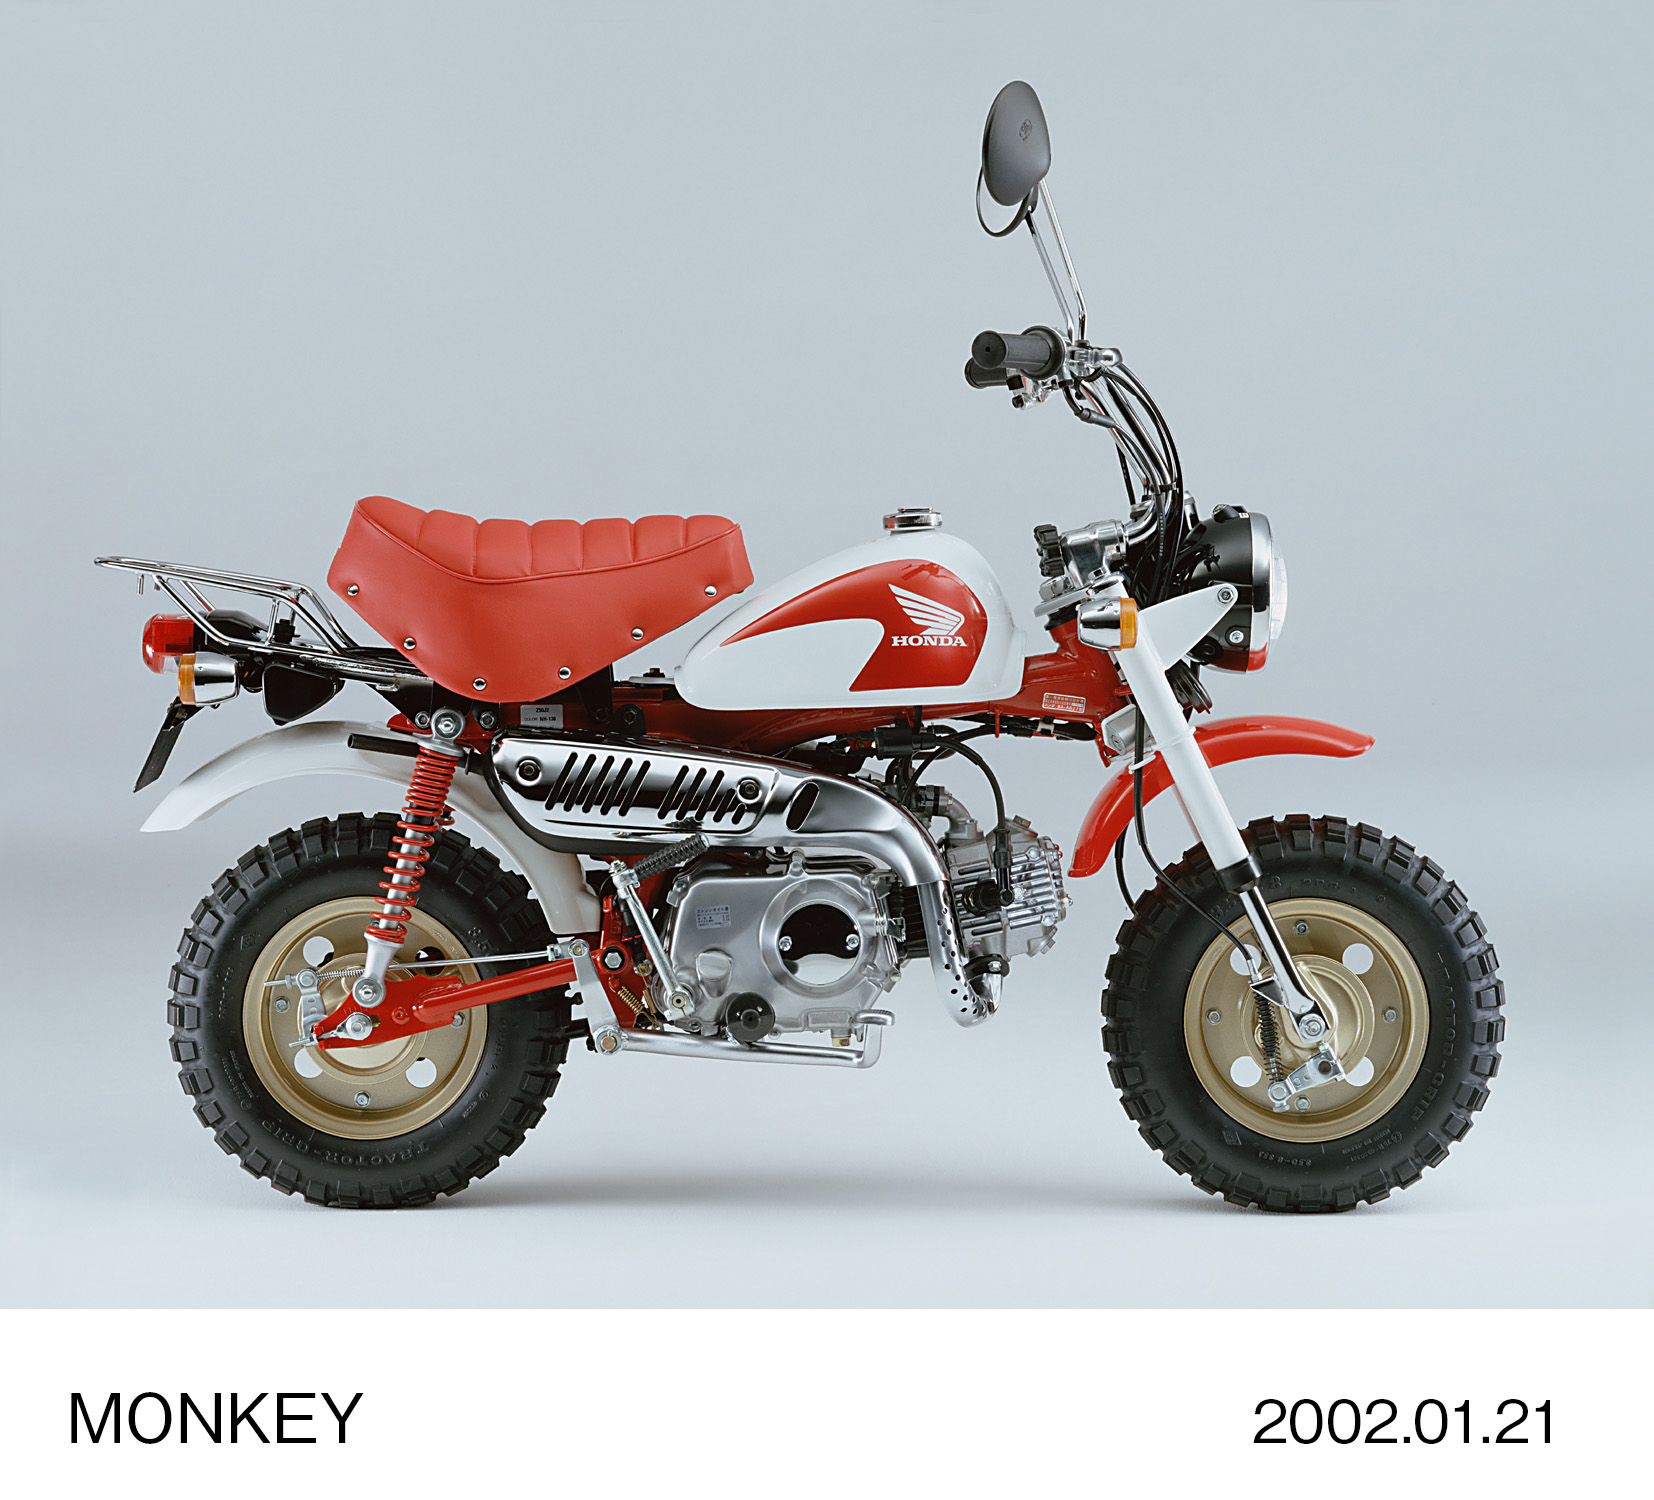 50ccのレジャーバイク「モンキー」にスペシャルカラーを追加し限定発売 